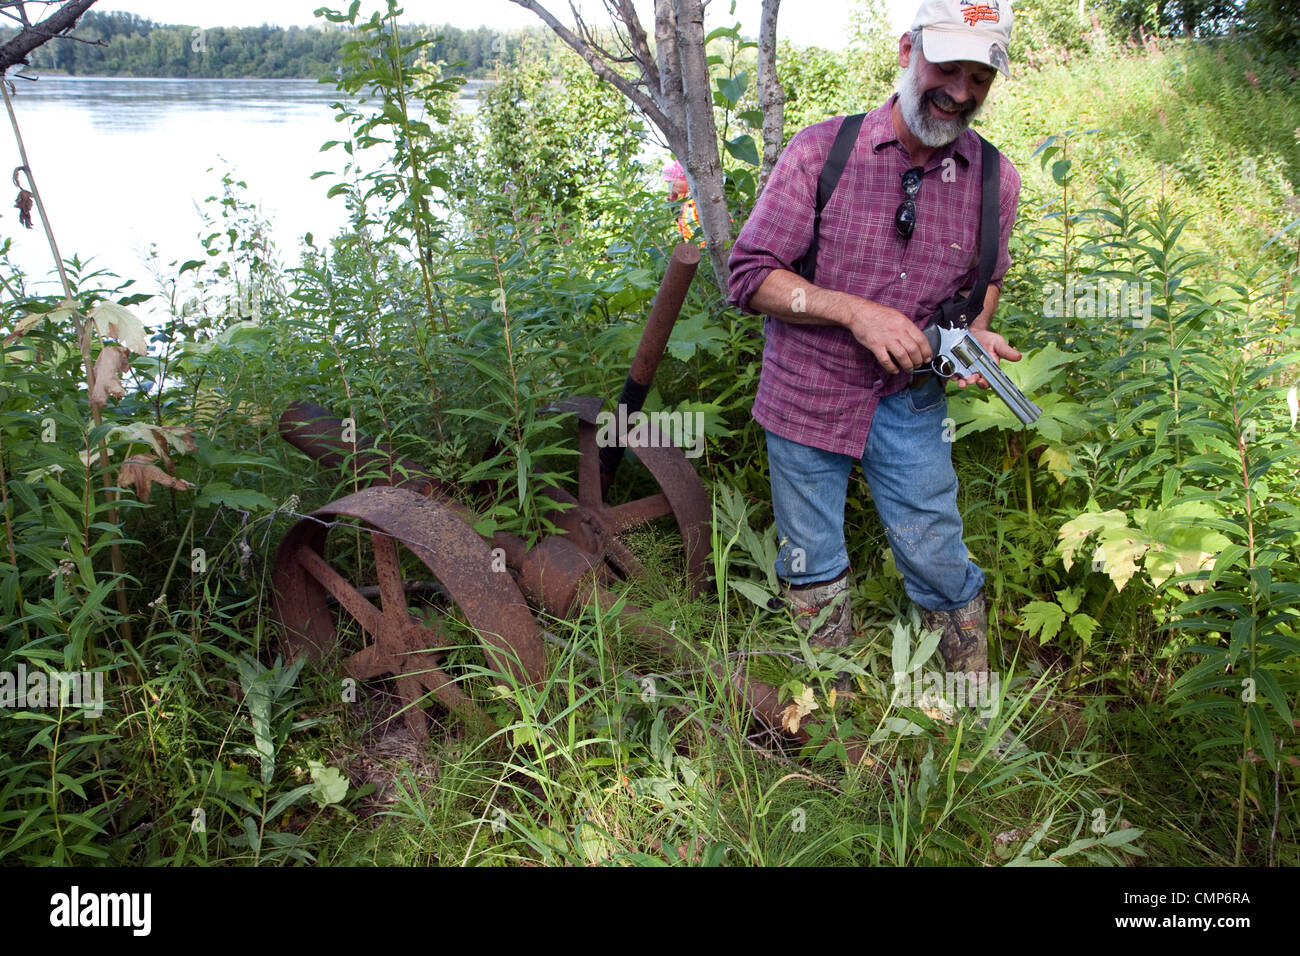 Ein Mann zeigt seine Bären Waffe beim stehen in der Nähe einige rostige Räder in der historischen Stadt Website Susitna, Alaska, USA Stockfoto